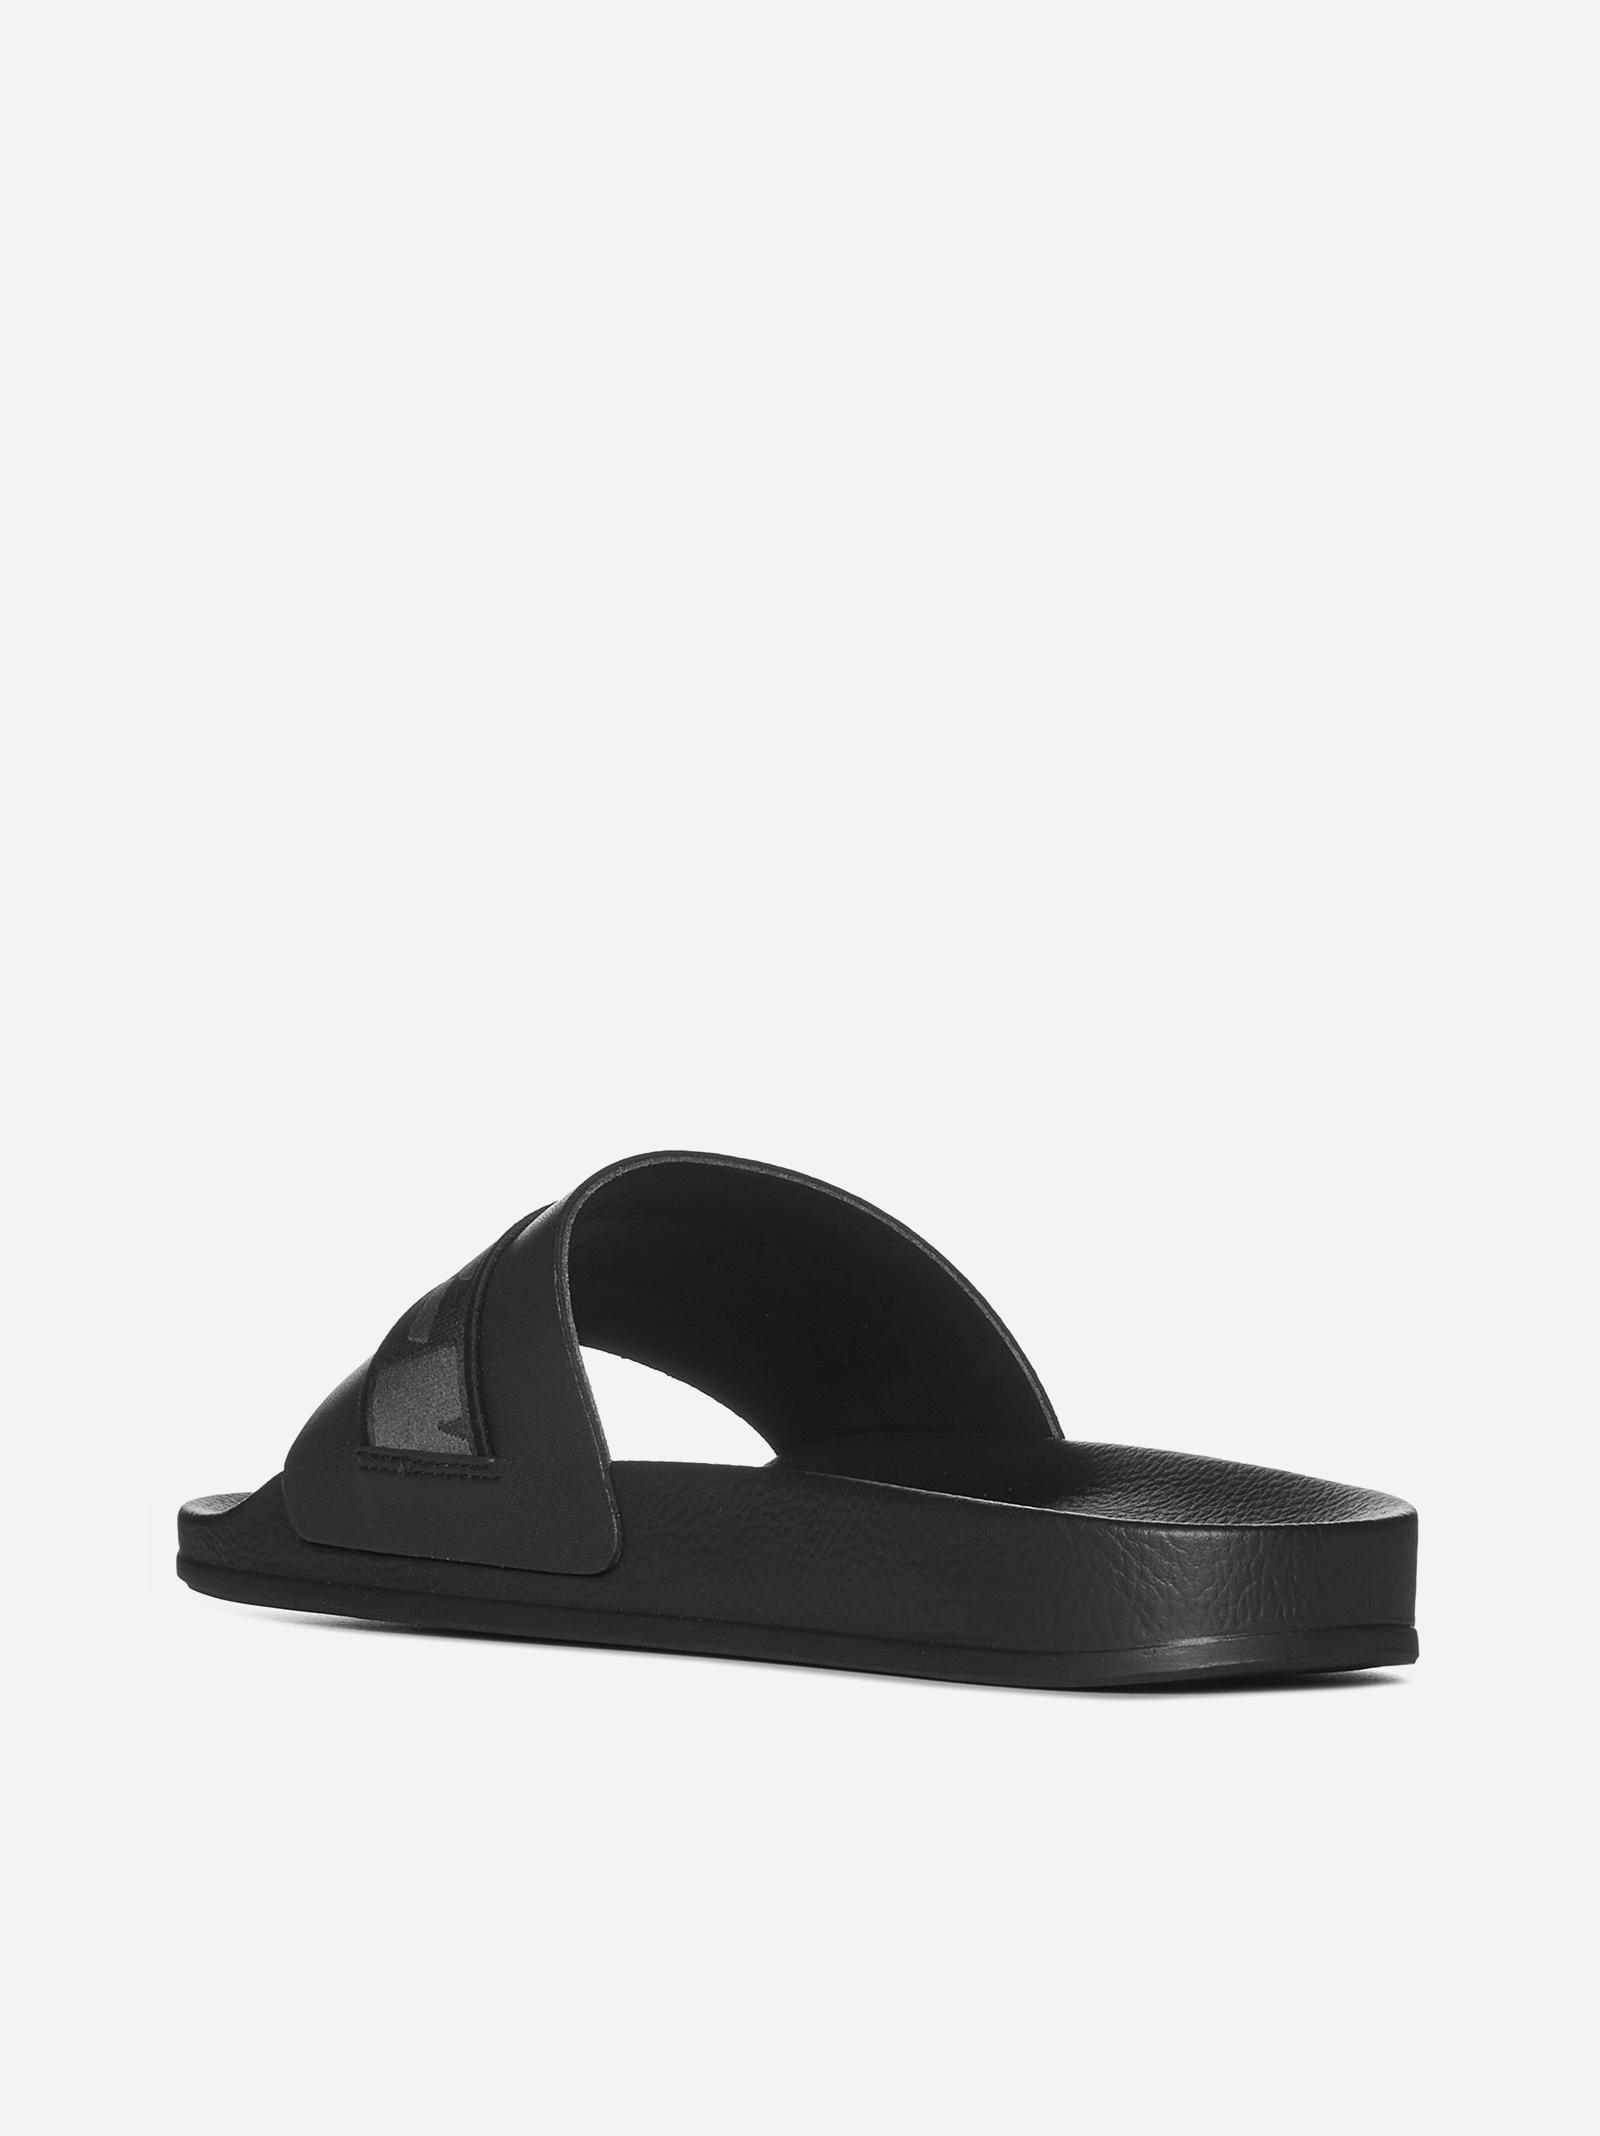 slides and flip flops Off-White c/o Virgil Abloh Industrial Belt Rubber Slide Sandals for Men Mens Shoes Sandals 